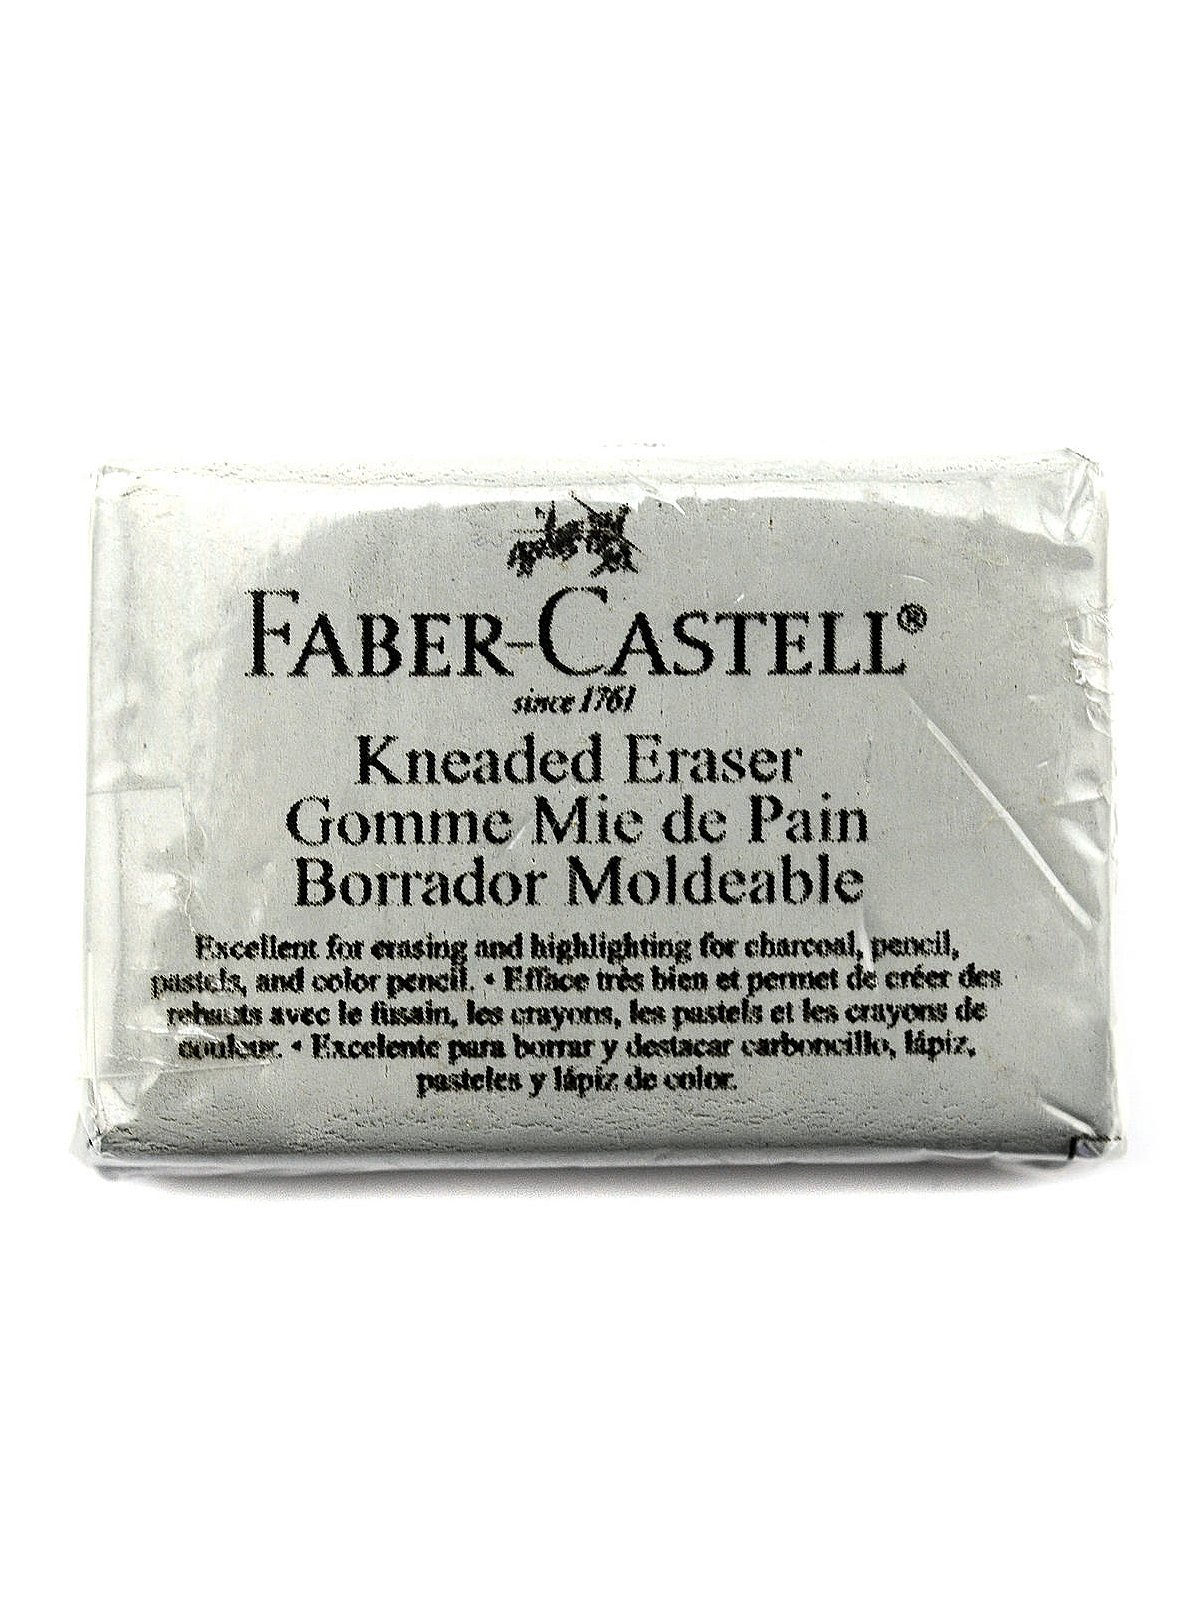 Faber Castell Kneadable Art Eraser – The Net Loft